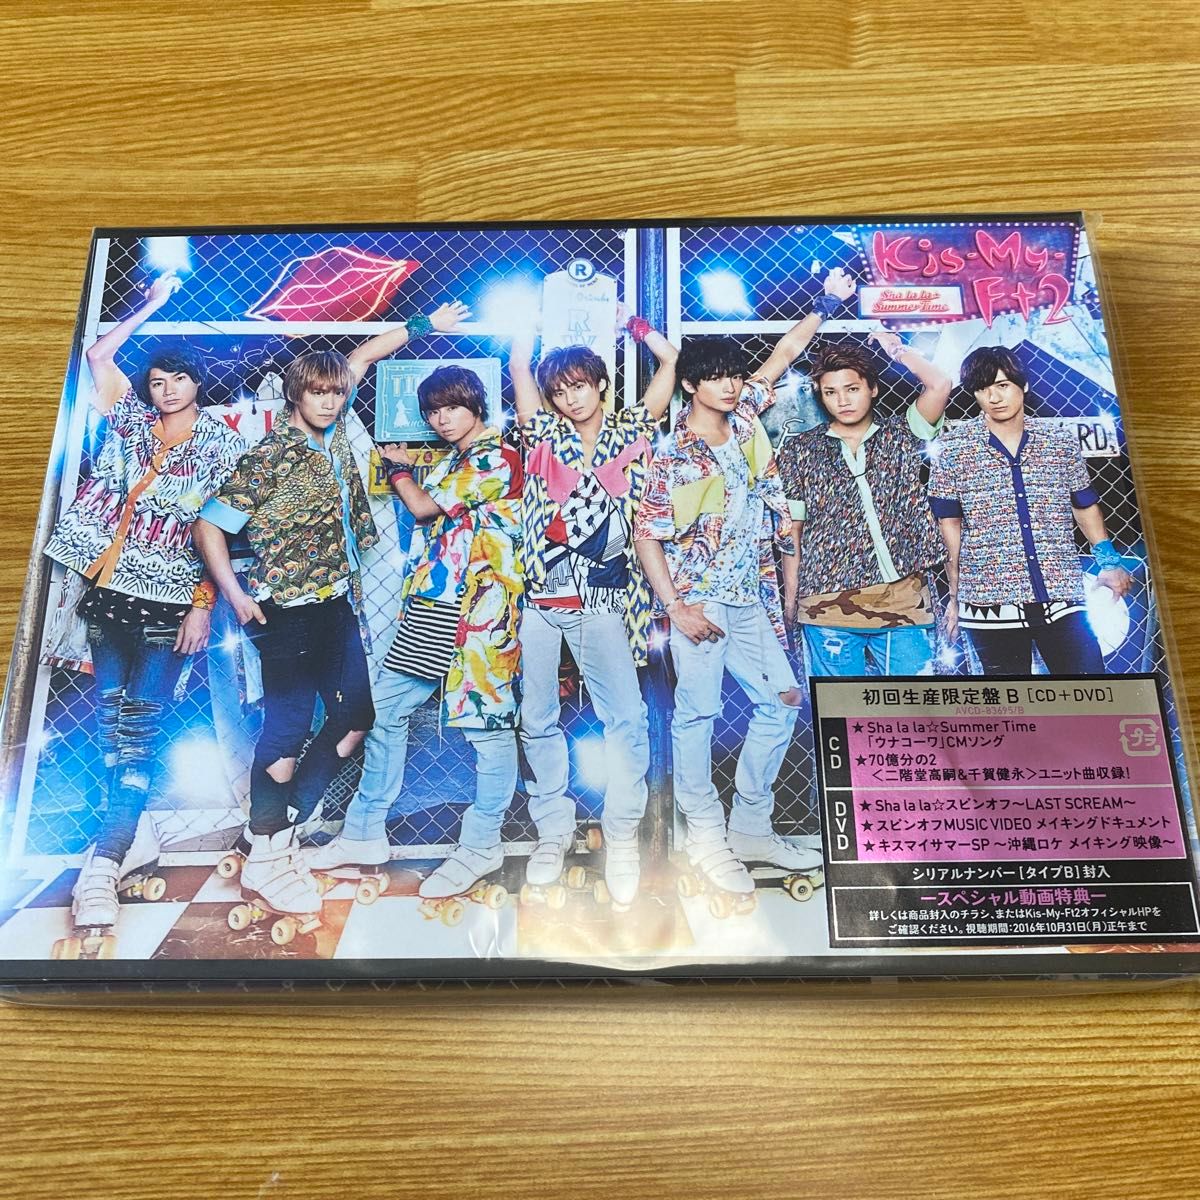 Sha la la☆Summer Time (DVD付) (初回生産限定盤B) [CD] Kis-My-Ft2 キスマイ